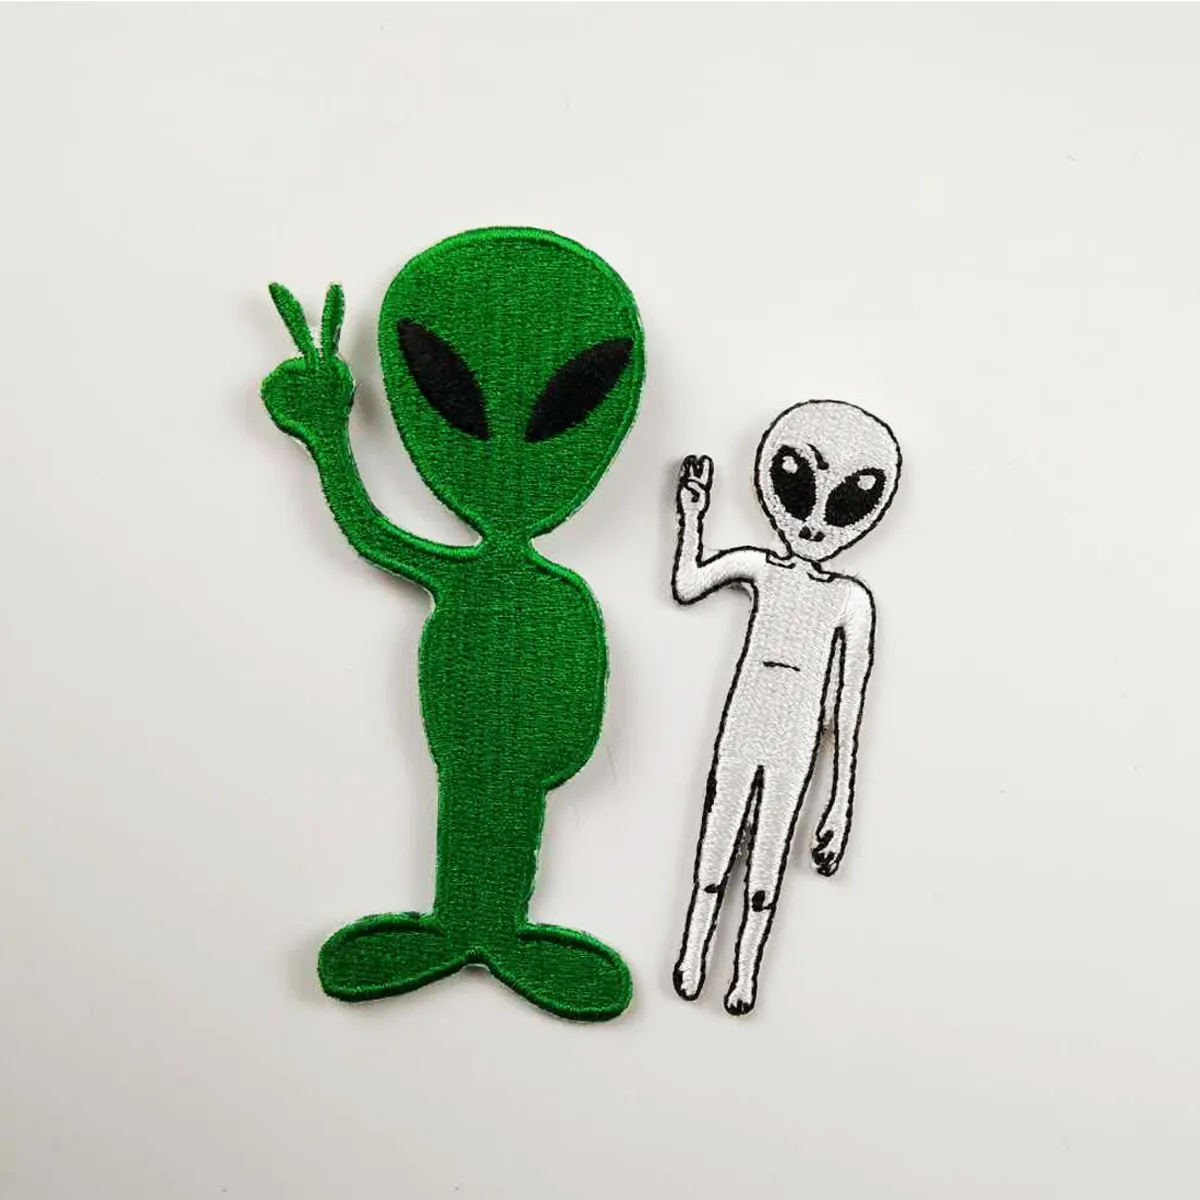 Новый Mix Alien 10 шт. Вышитые патчи Утюг на одежде для футболки Сумка Передний Размер Аппликации Бесплатная Доставка